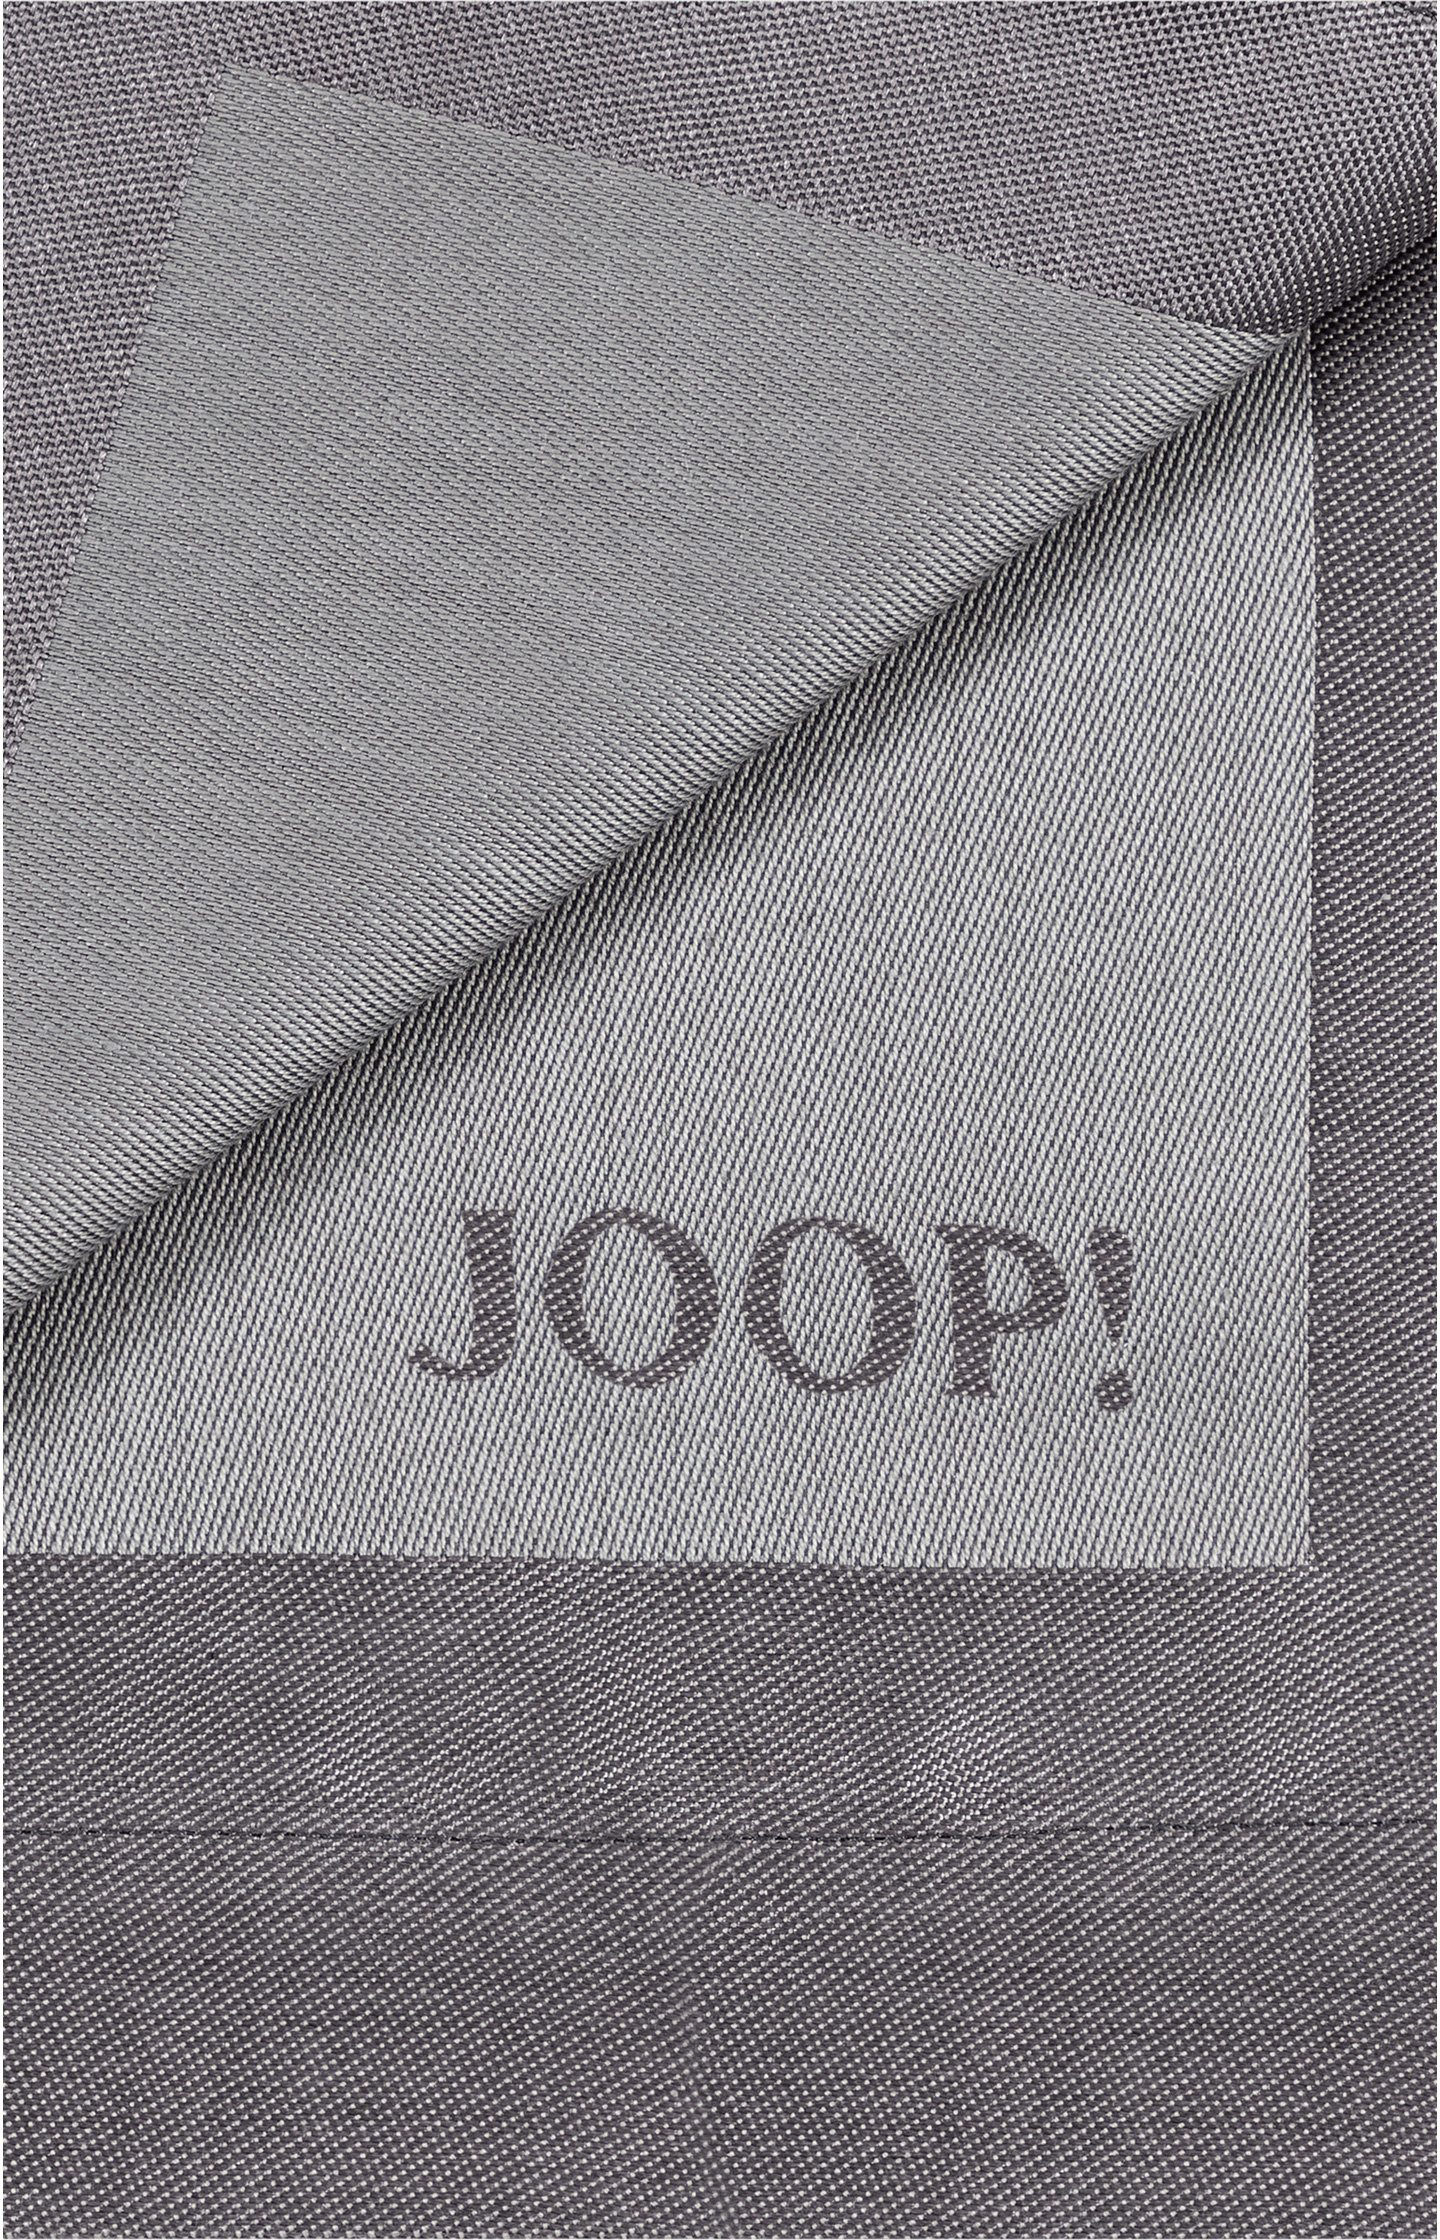 Platzsets JOOP! Signature - 2er Set in Platin, 36 x 48 cm - im JOOP!  Online-Shop